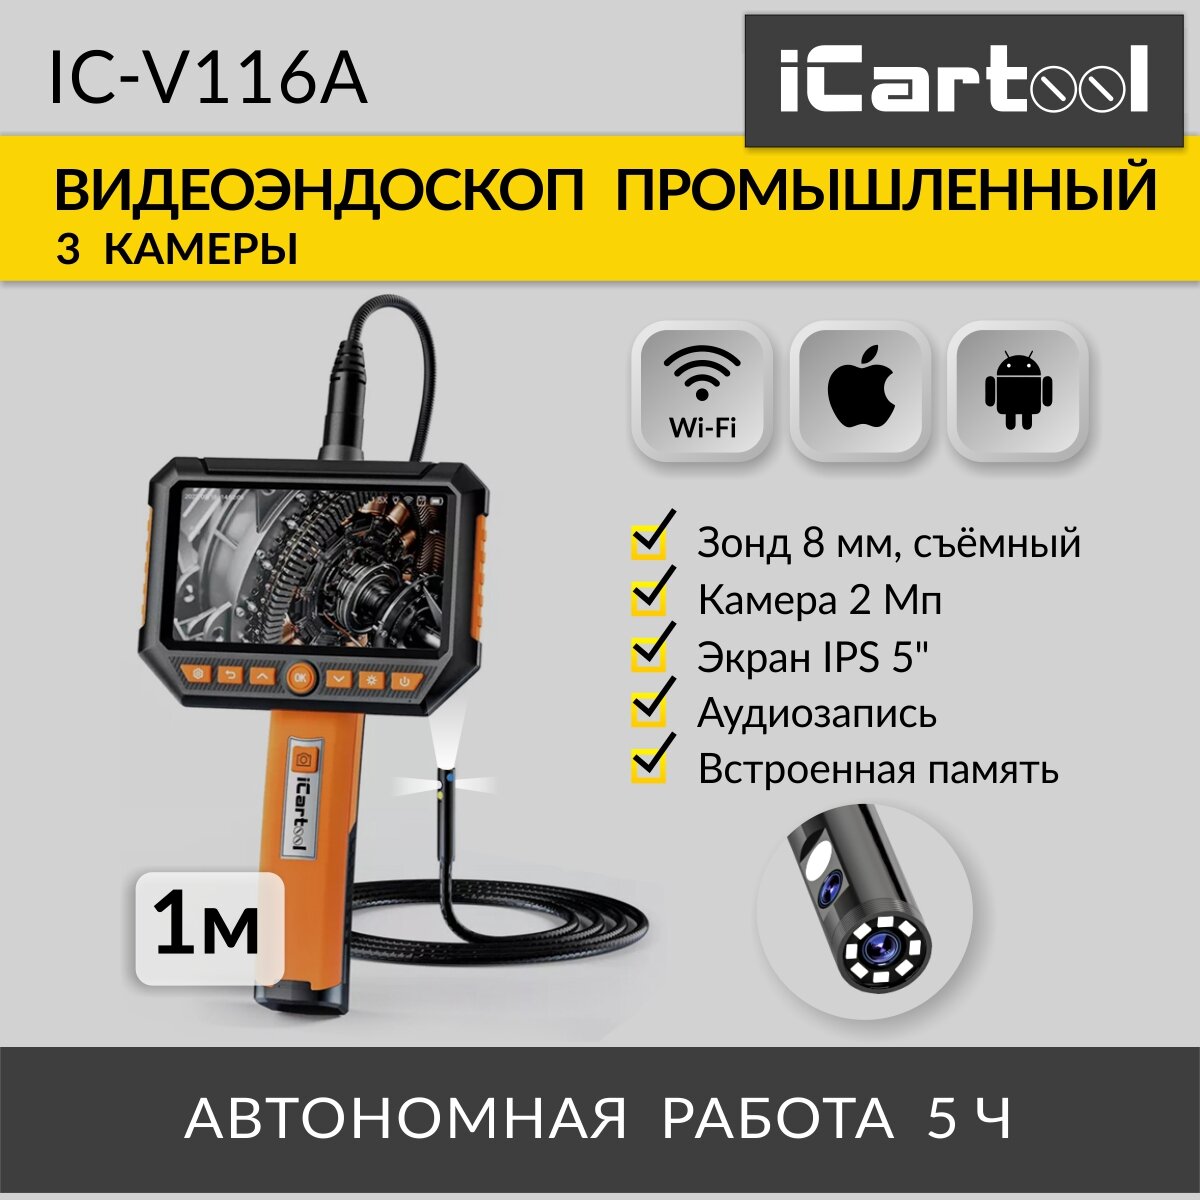 ICarTool Видеоэндоскоп промышленный, экран 5, 3 камеры, 2Мп, 1920x1080, 1м, 8 мм сменный зонд IC-V116A